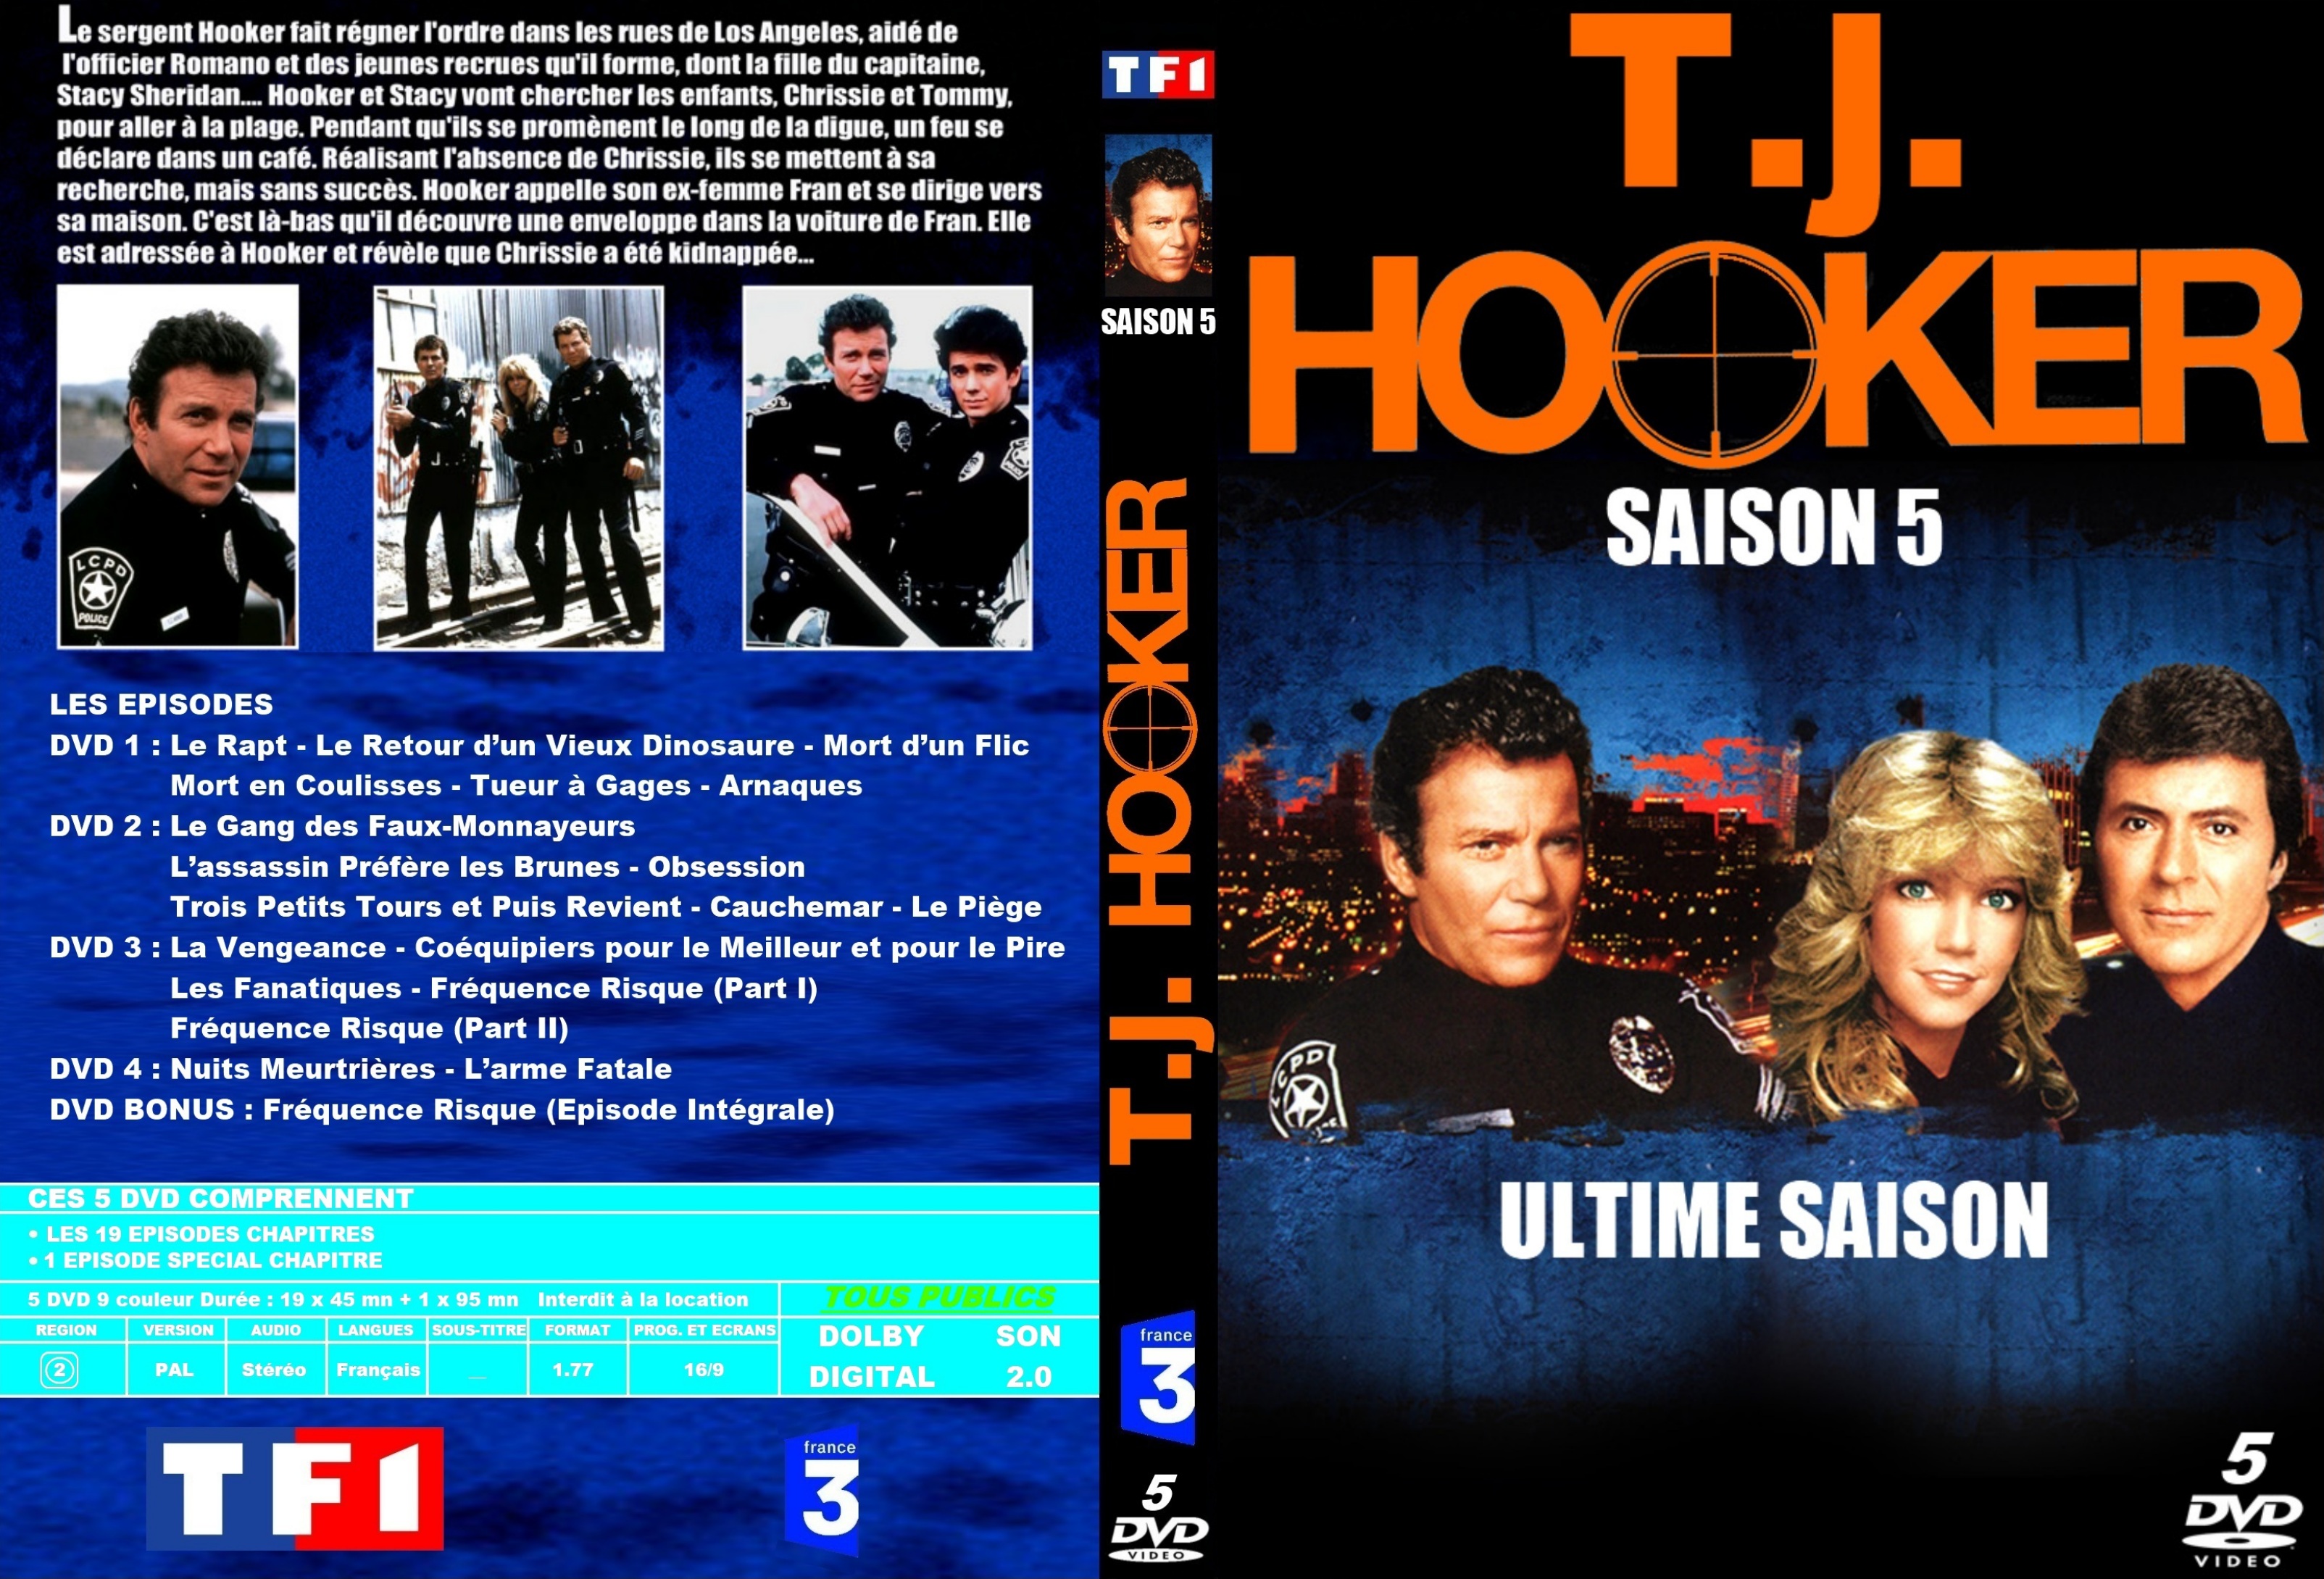 Jaquette DVD Hooker Saison 5 custom